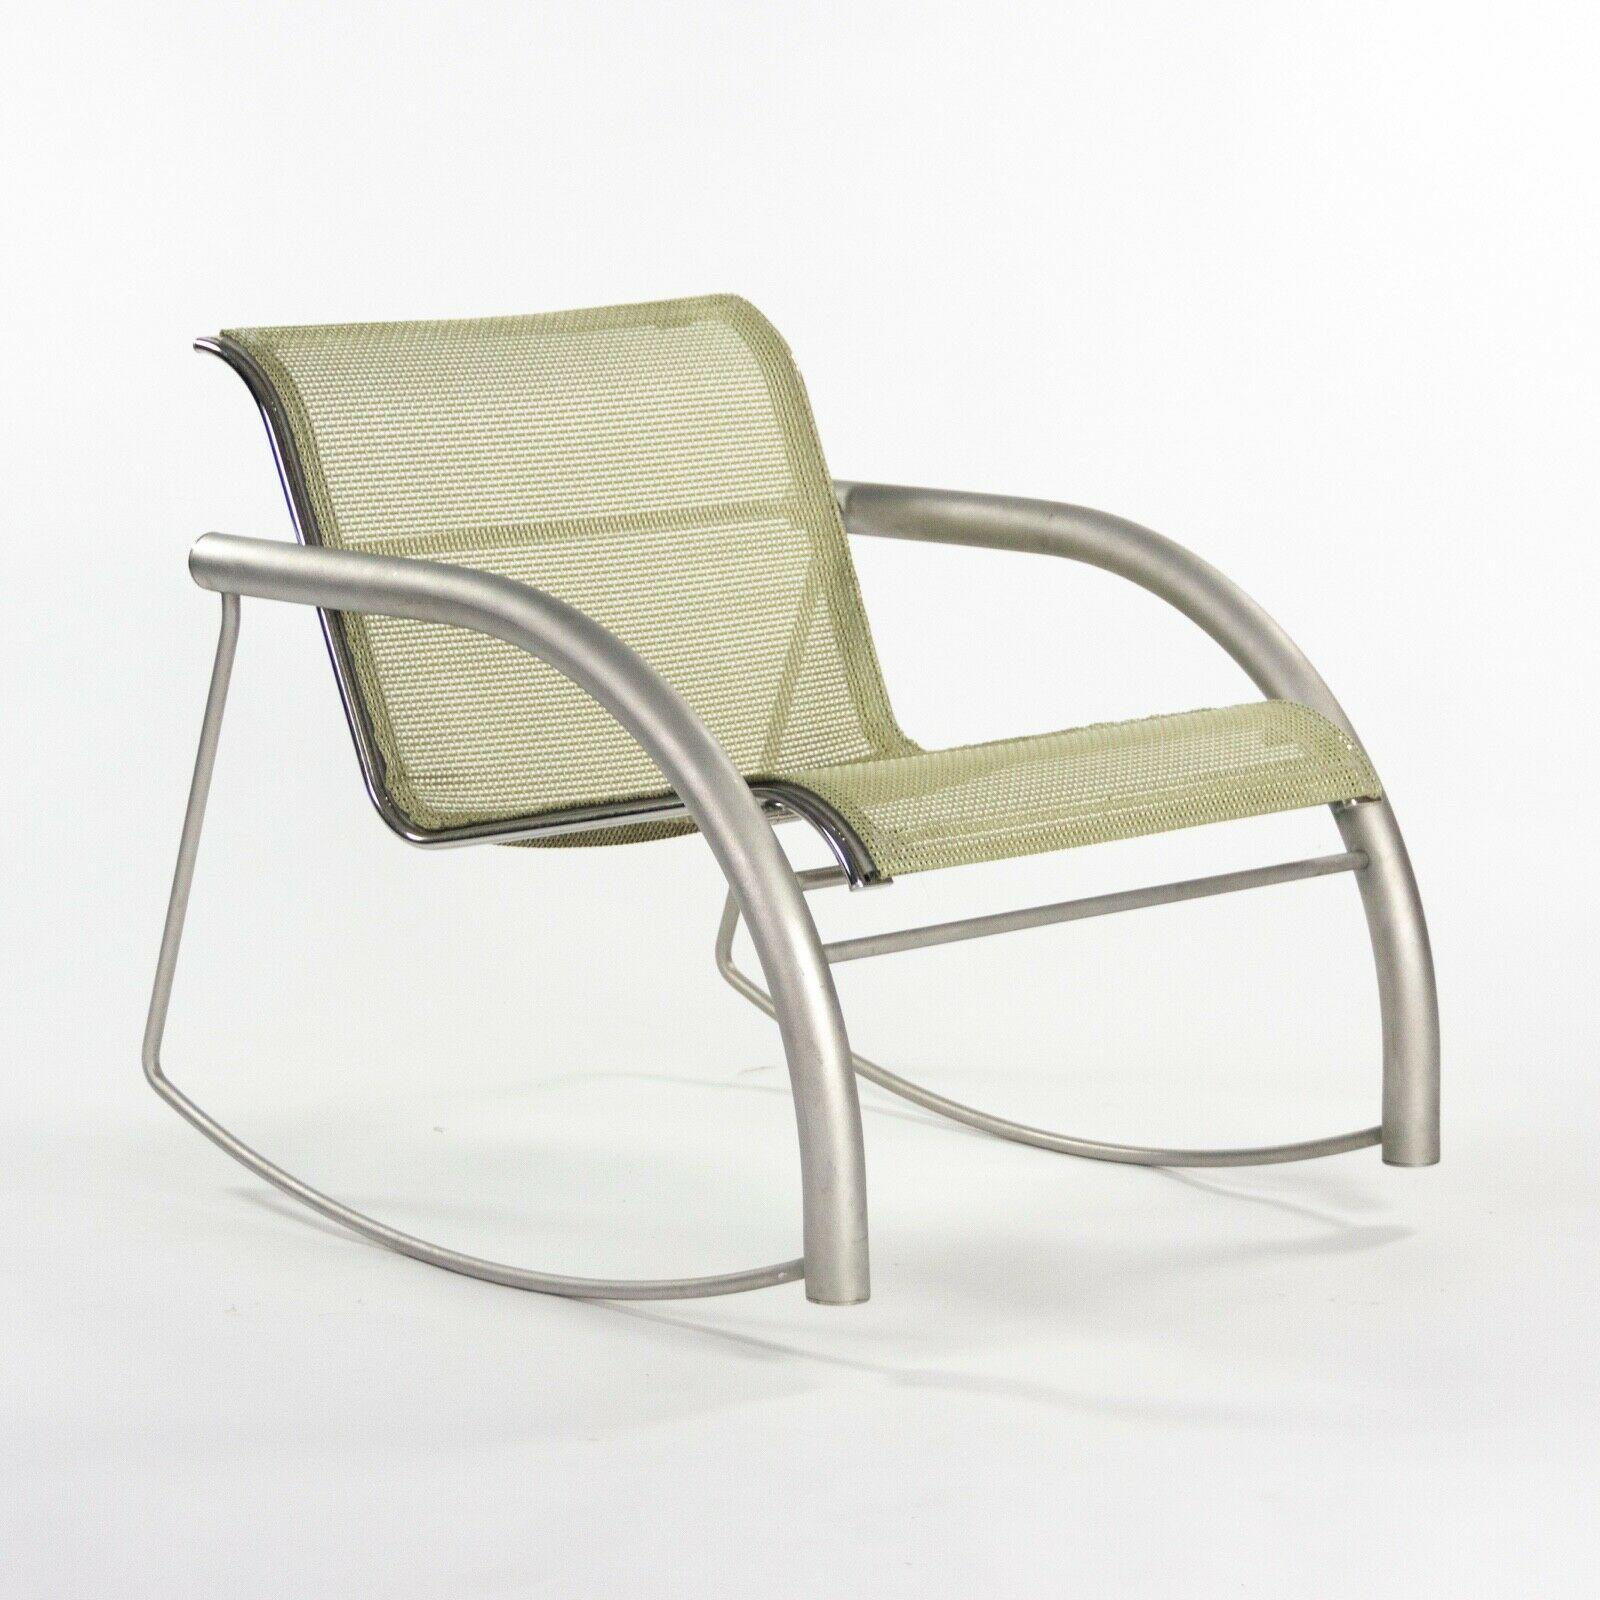 Moderne Prototype de chaise à bascule Richard Schultz 2002 Collection en acier inoxydable et maille